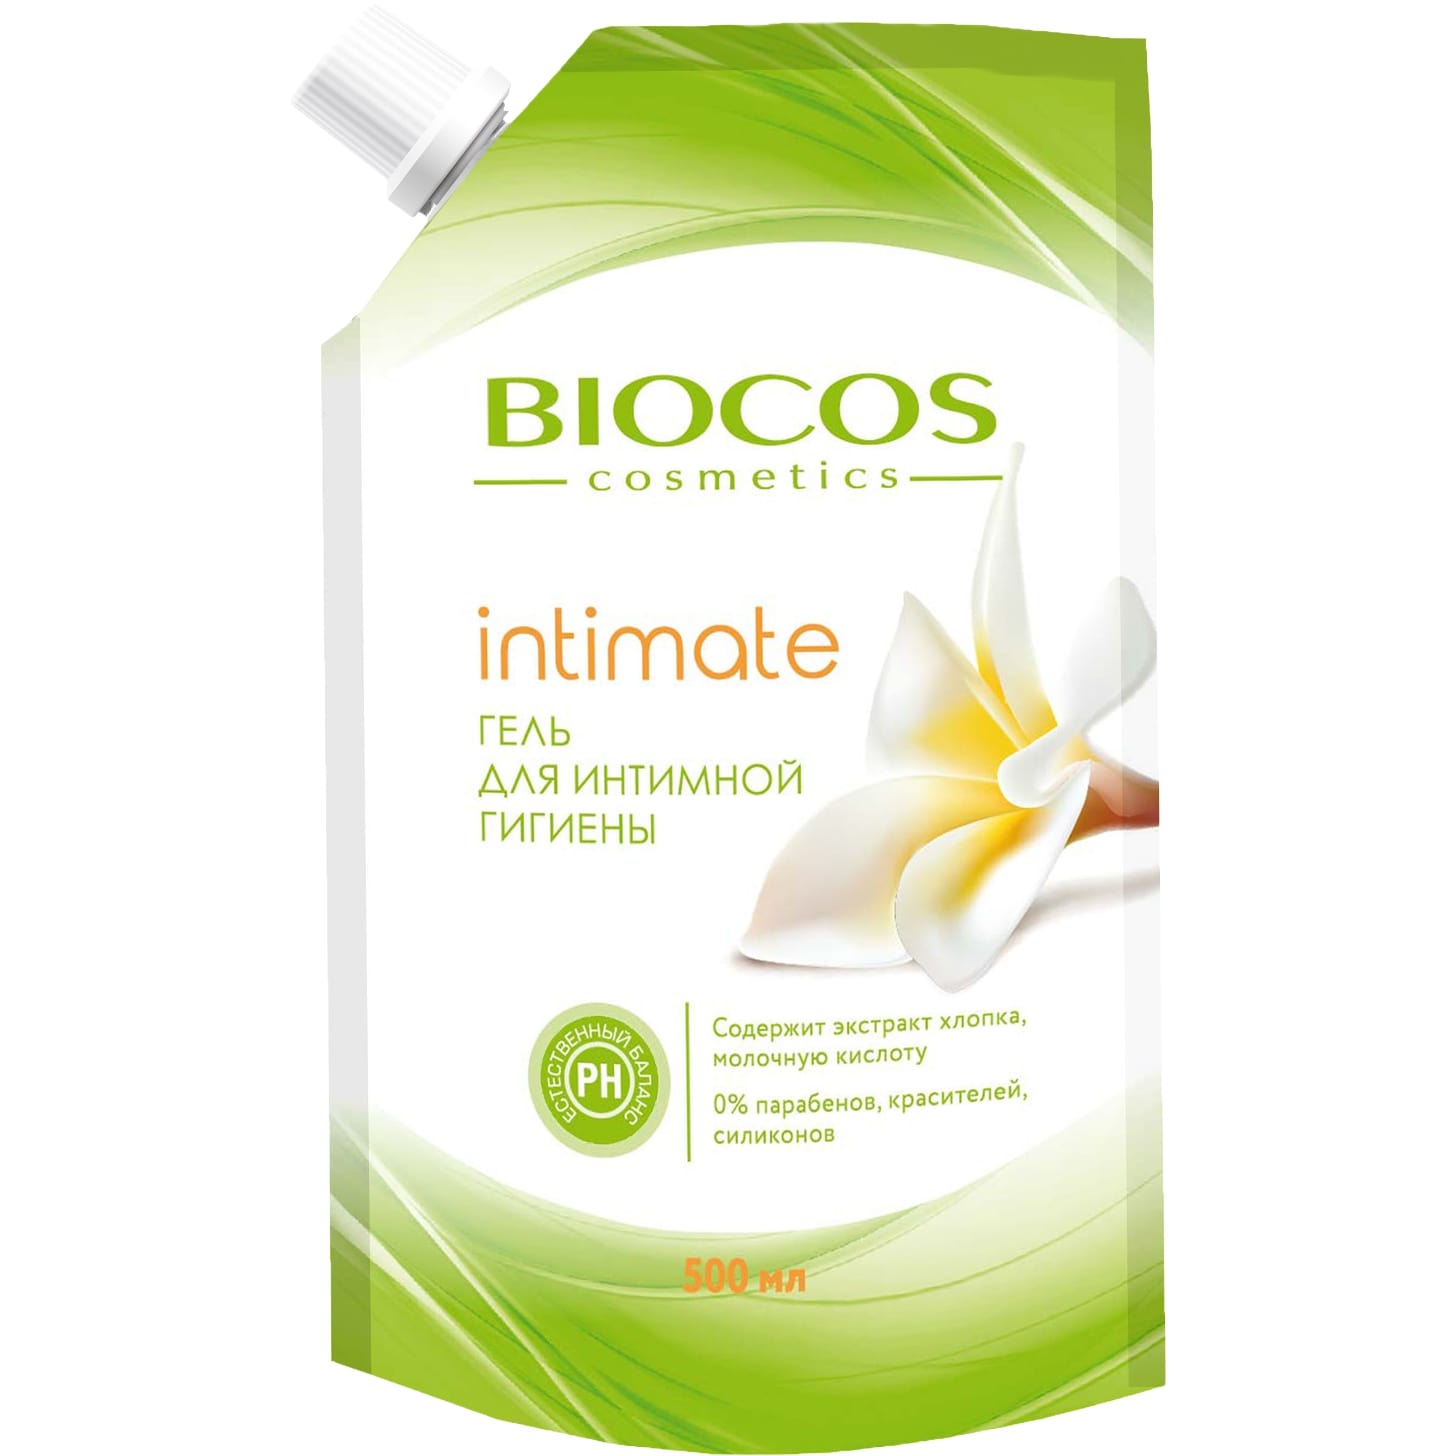 Гель для интимной гигиены BioCos intimate с экстрактом хлопка и молочной кислотой 500 мл гель комфорт для интимной гигиены с пребиотиком ежедневный уход 230мл